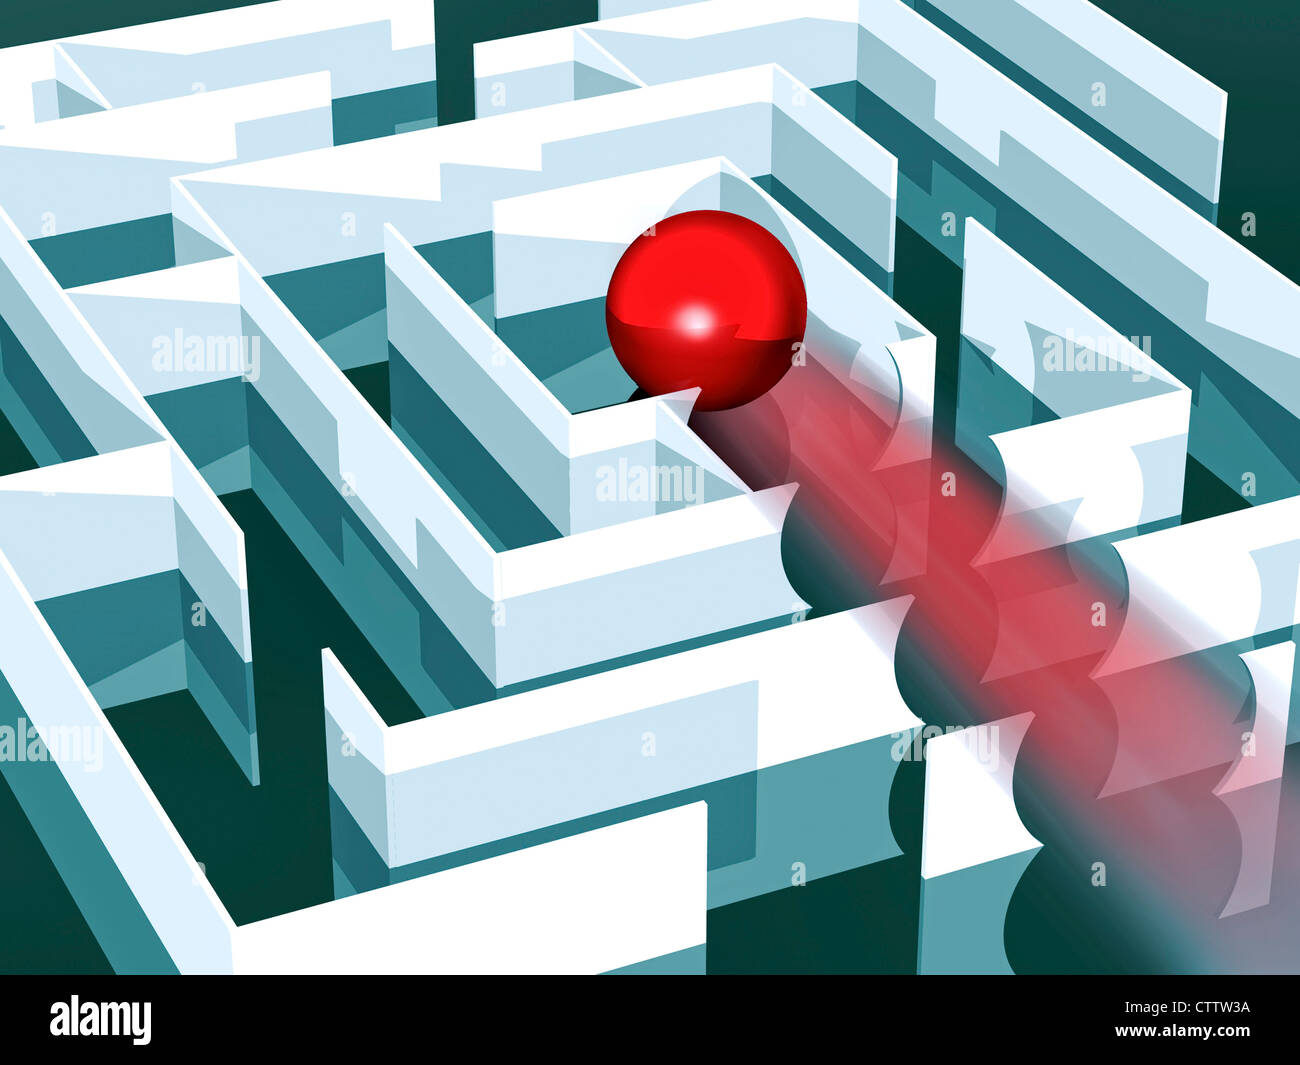 Labyrinth Mit Roter Kugel, sterben Alle Wände Zur Mitte Hin durchbricht Stockfoto